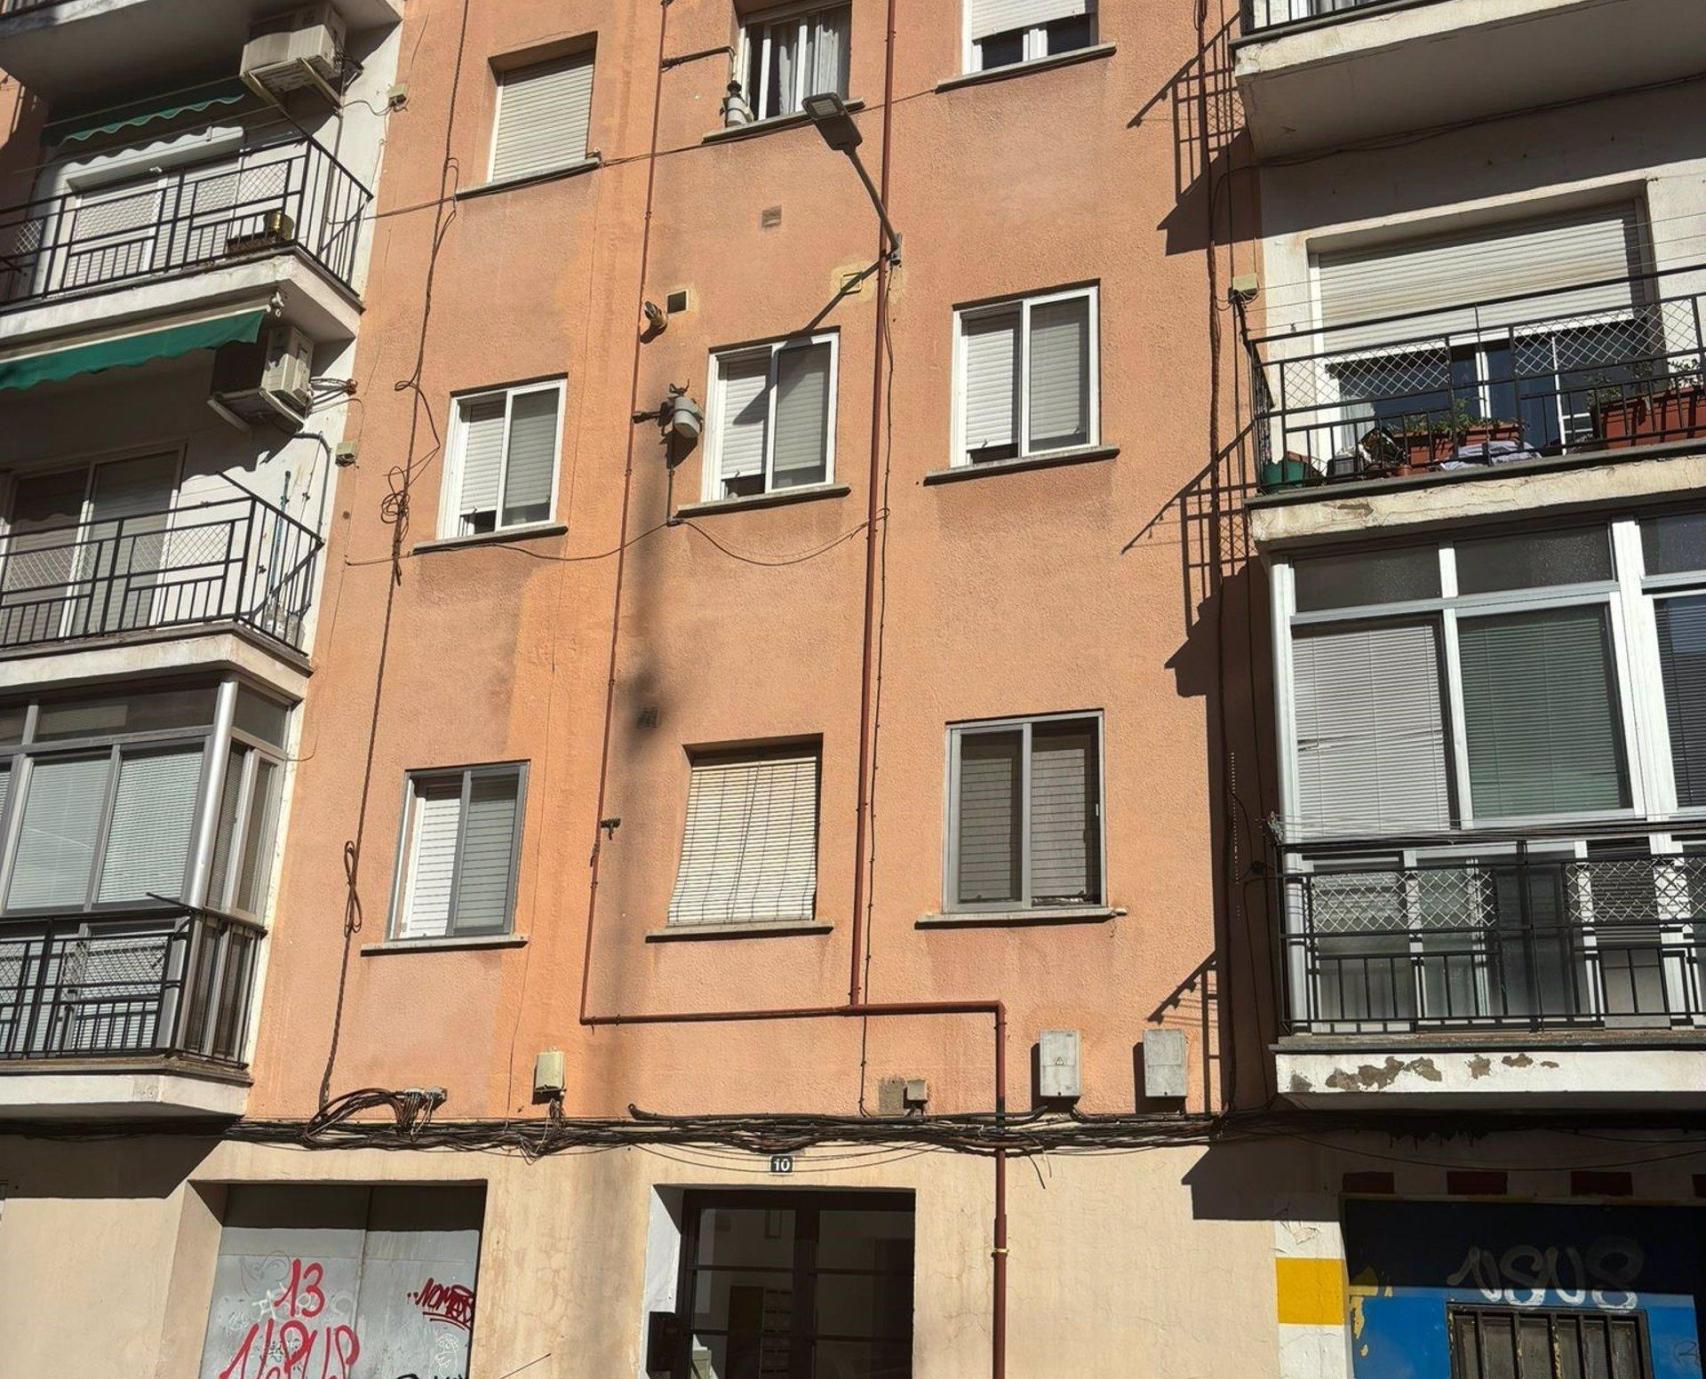 Edificio de la calle Santa Ana de Cuenca donde se ha producido la muerte violenta de una mujer. Foto: Europa Press.